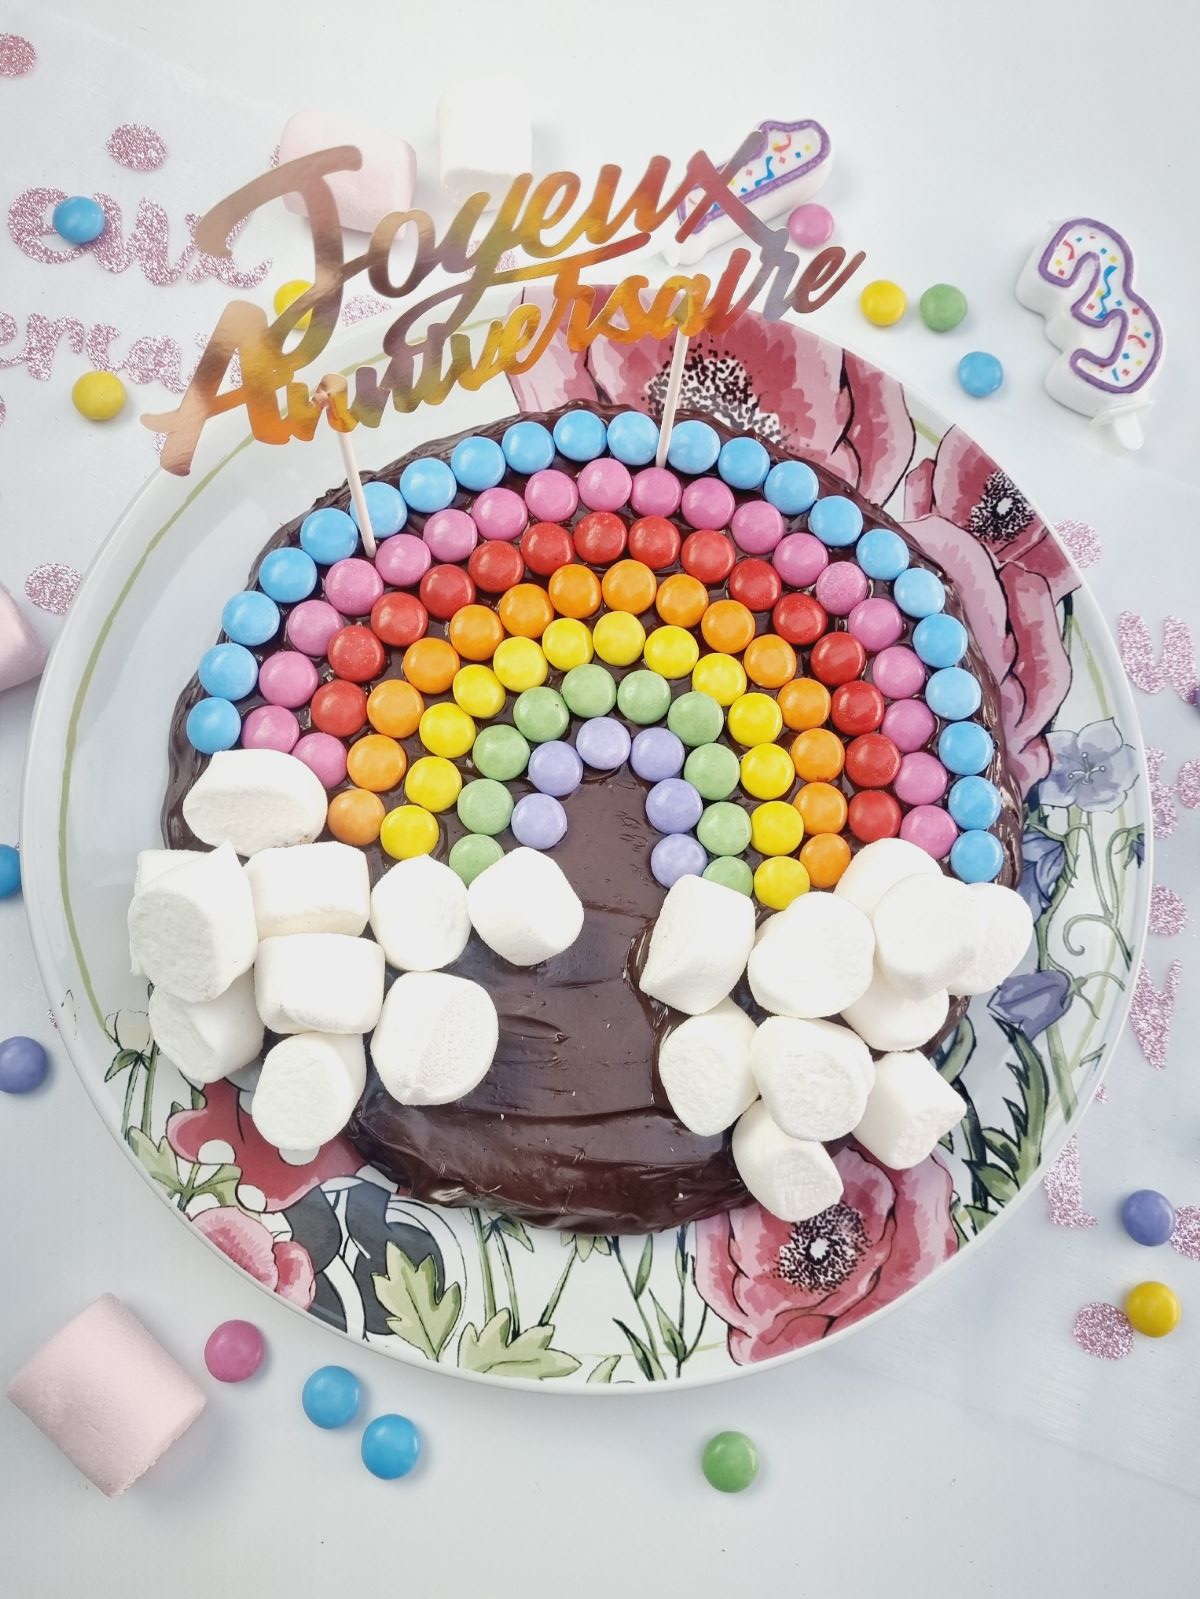 Décoration de gâteau d'anniversaire pour fille, arc-en-ciel